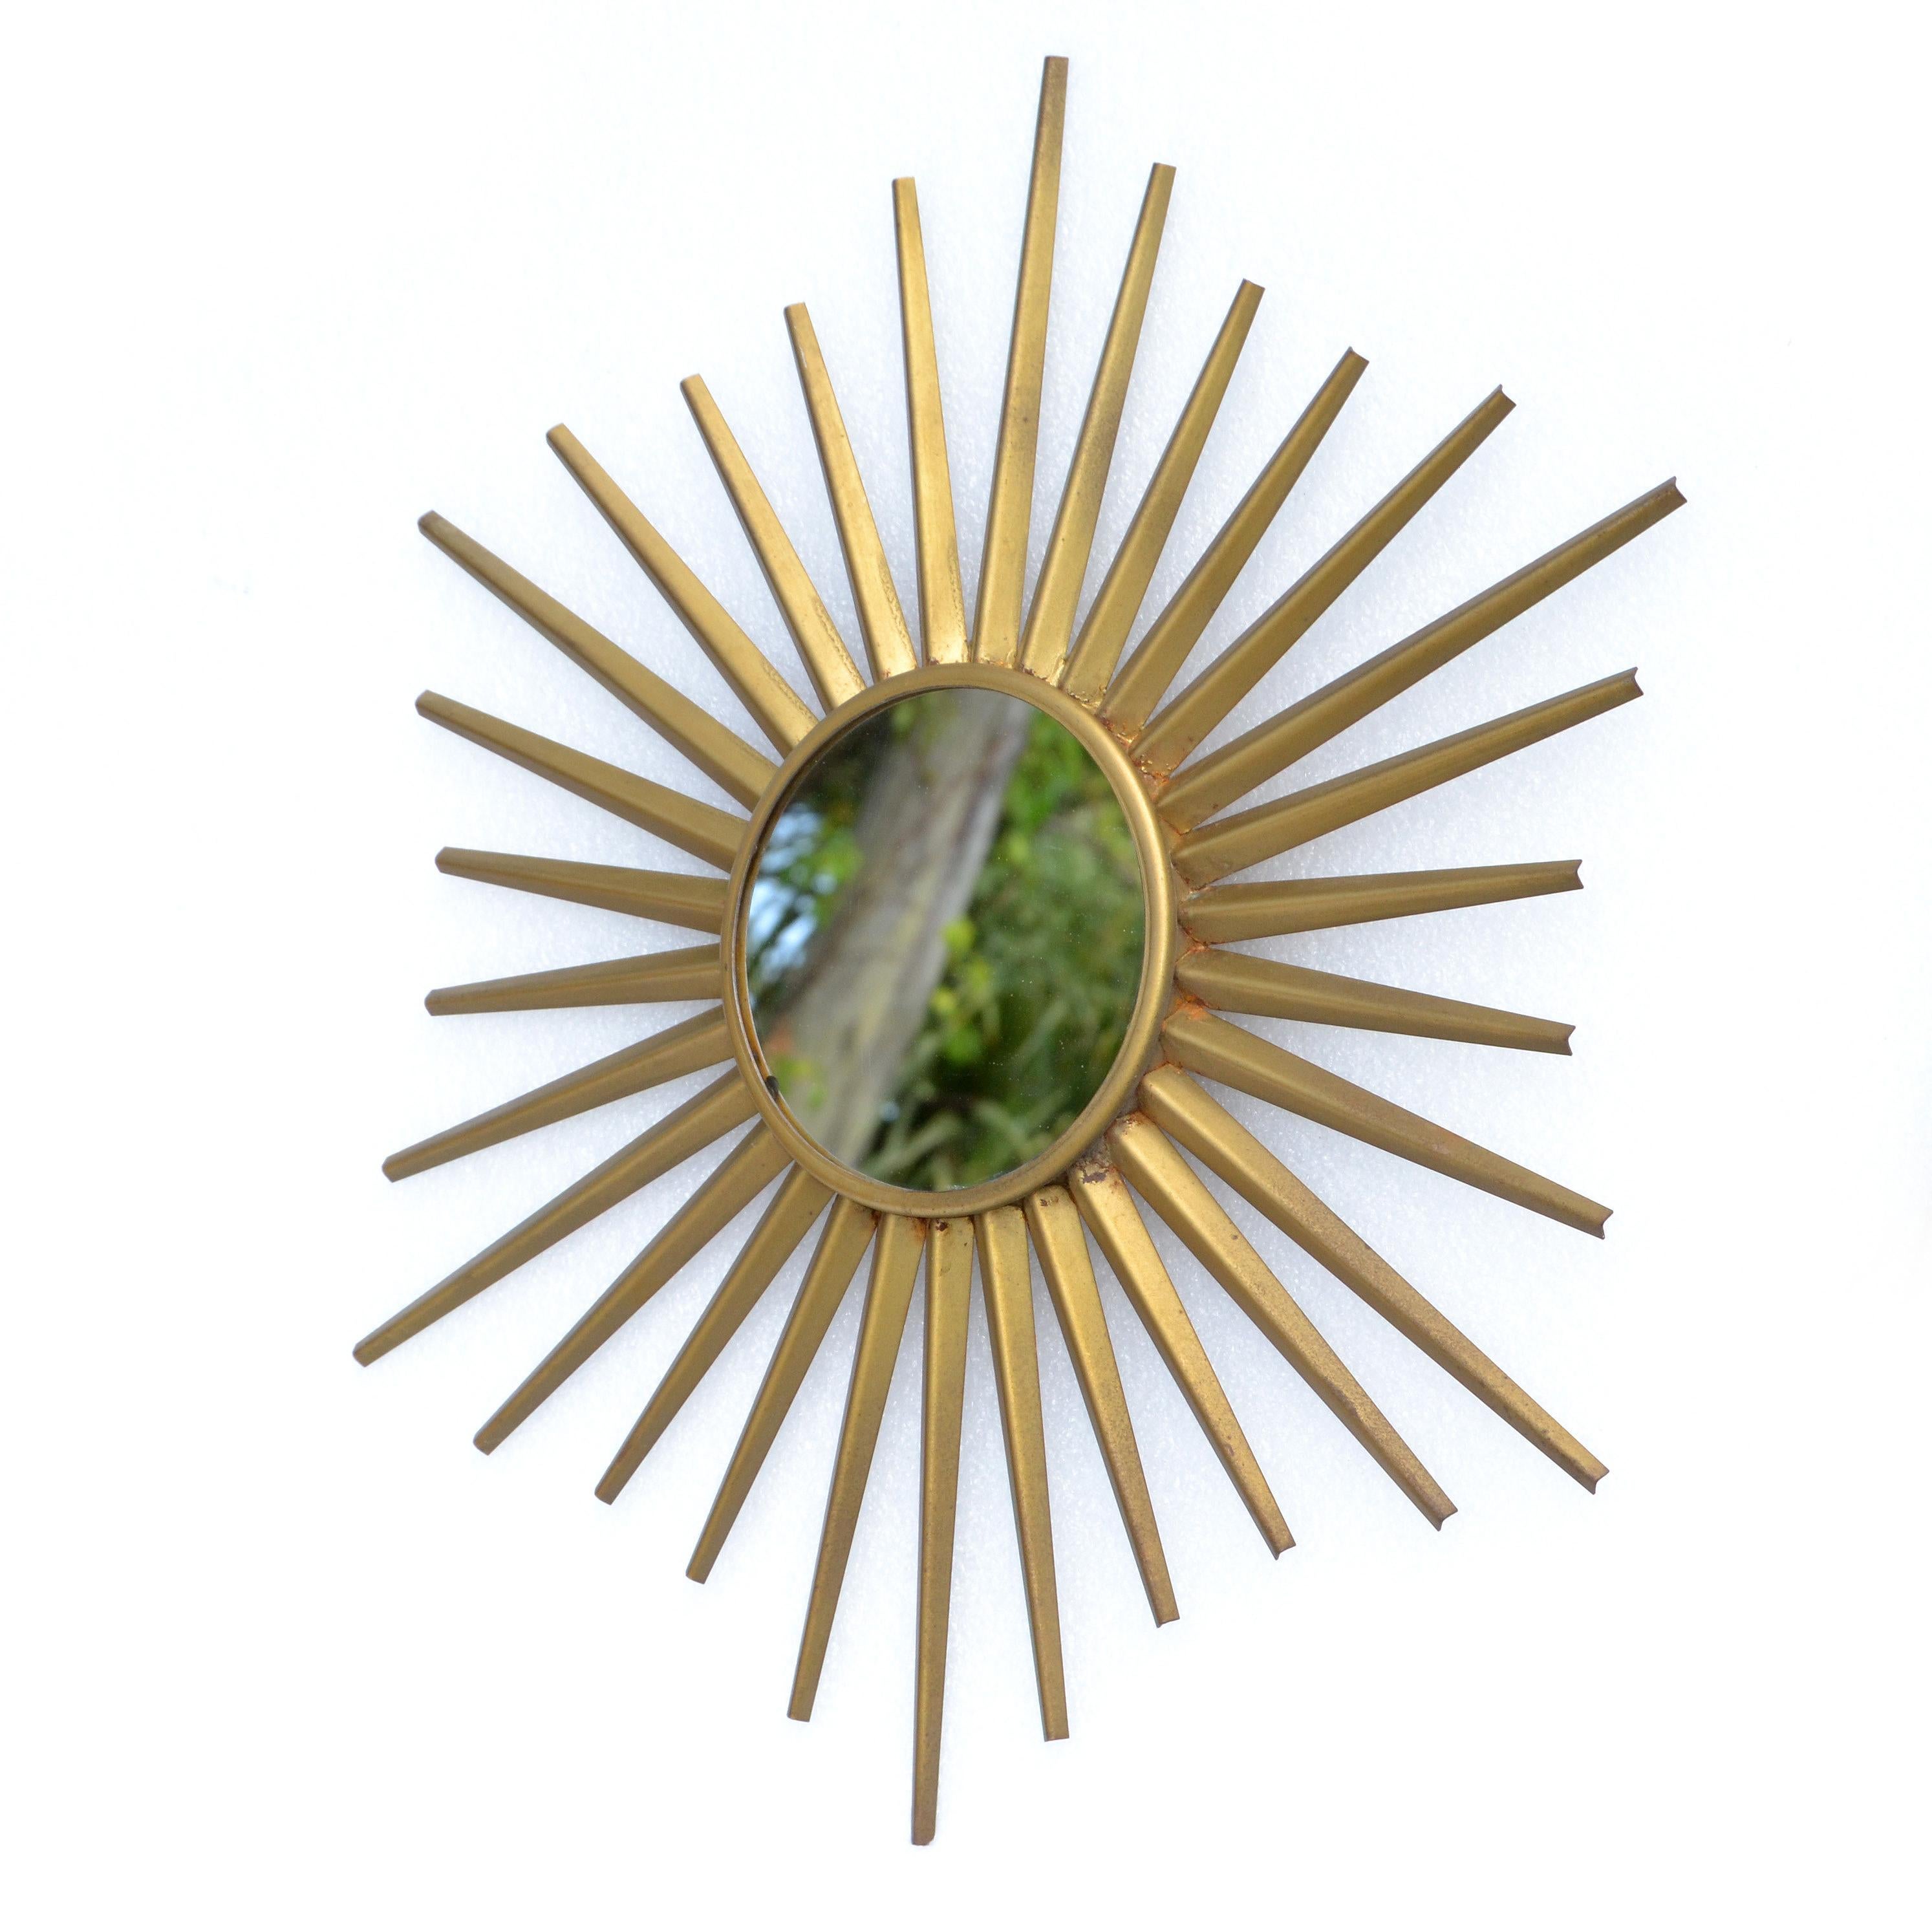 Miroir en forme de soleil en fer, finition dorée, fabriqué à la main et datant des années 1950.
Le miroir rond et plat au centre mesure 5,25 pouces de diamètre.
Le support est en bois.